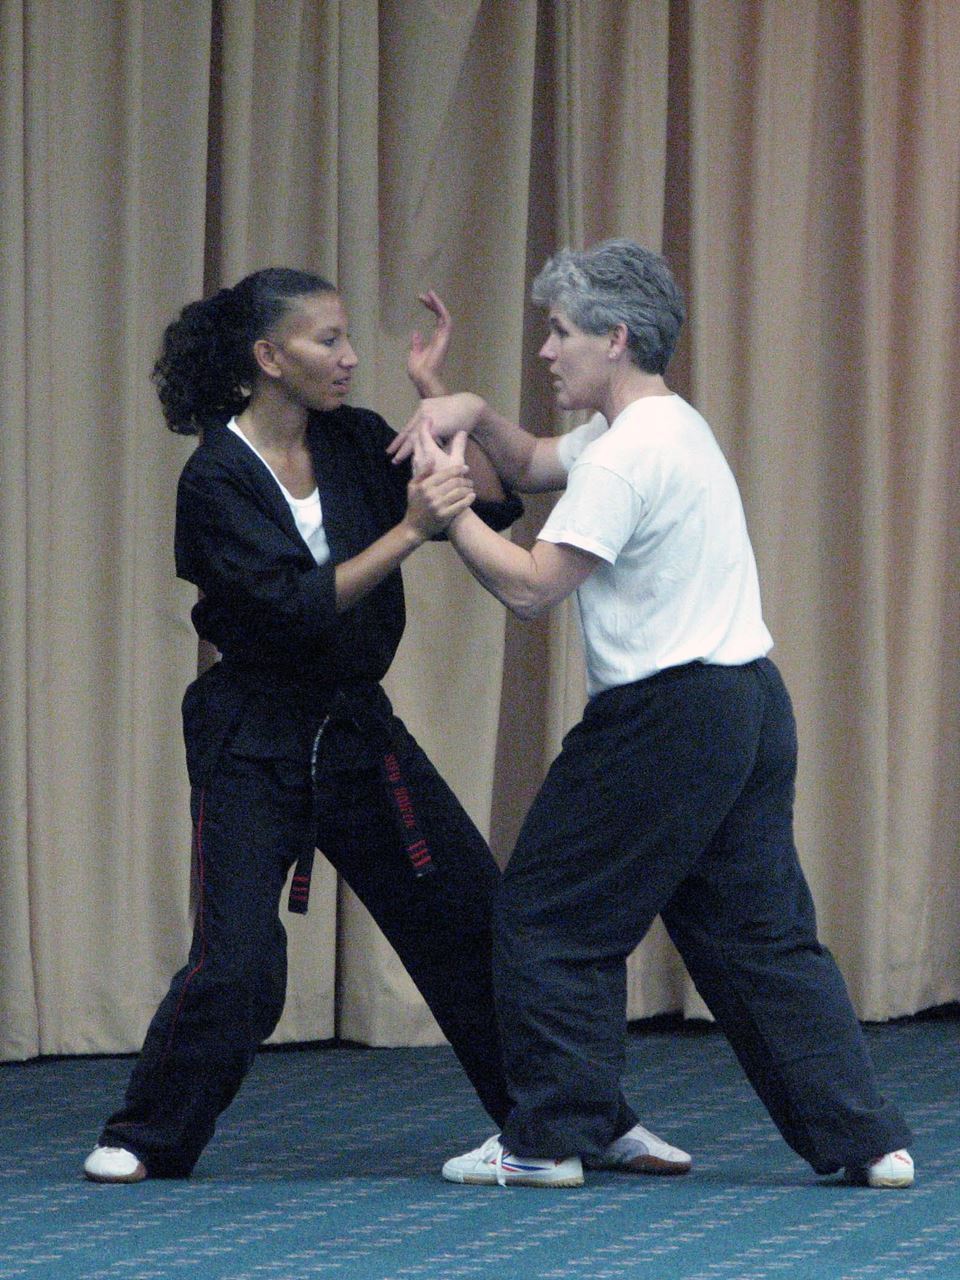 Sonya Richardson and Melinda Johnson, 2007